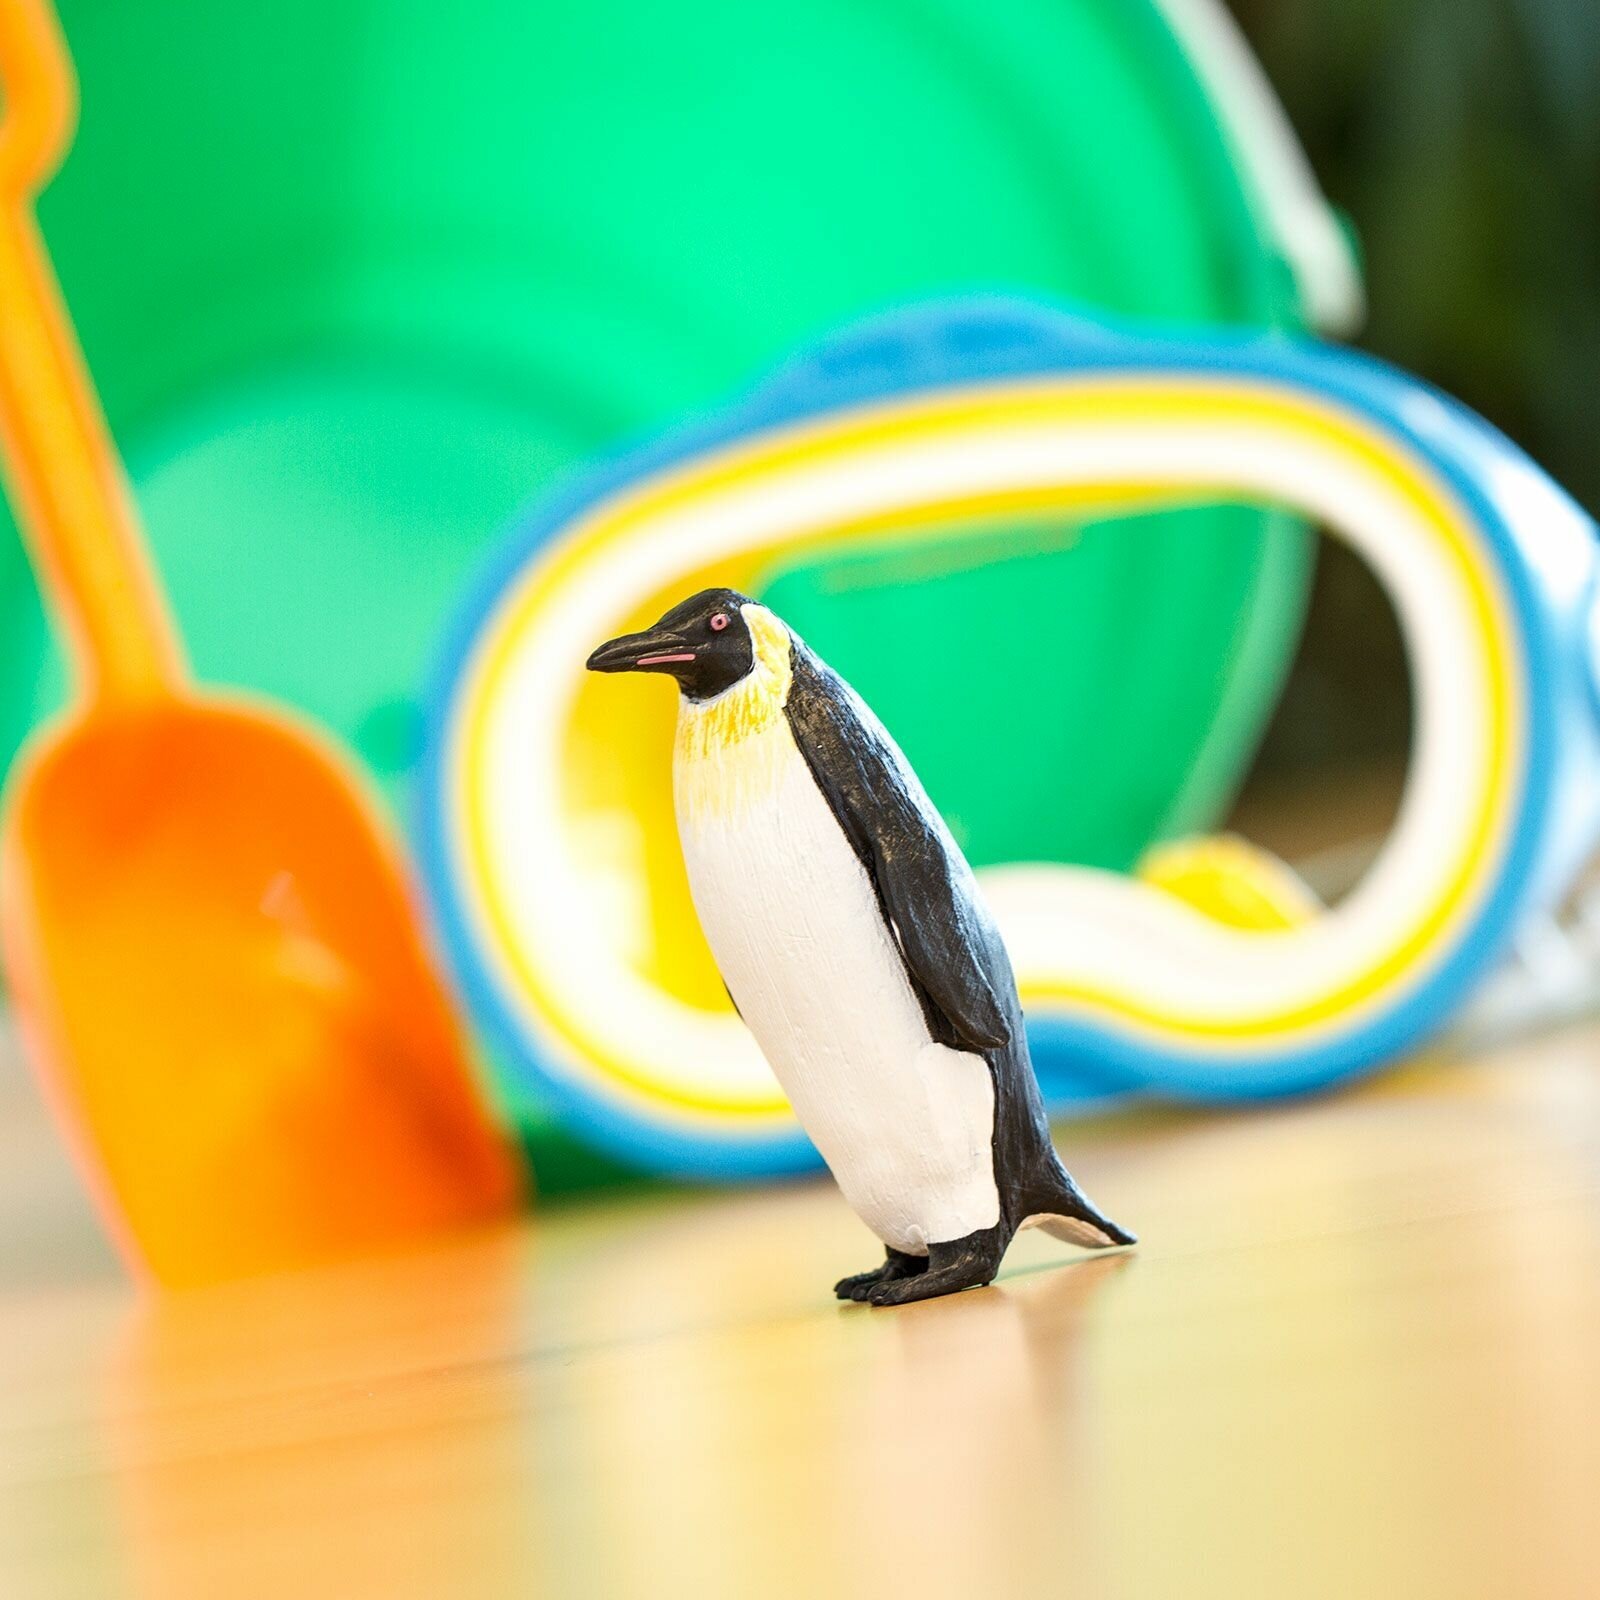 Фигурка птицы Safari Ltd Императорский пингвин, для детей, игрушка коллекционная, 276129